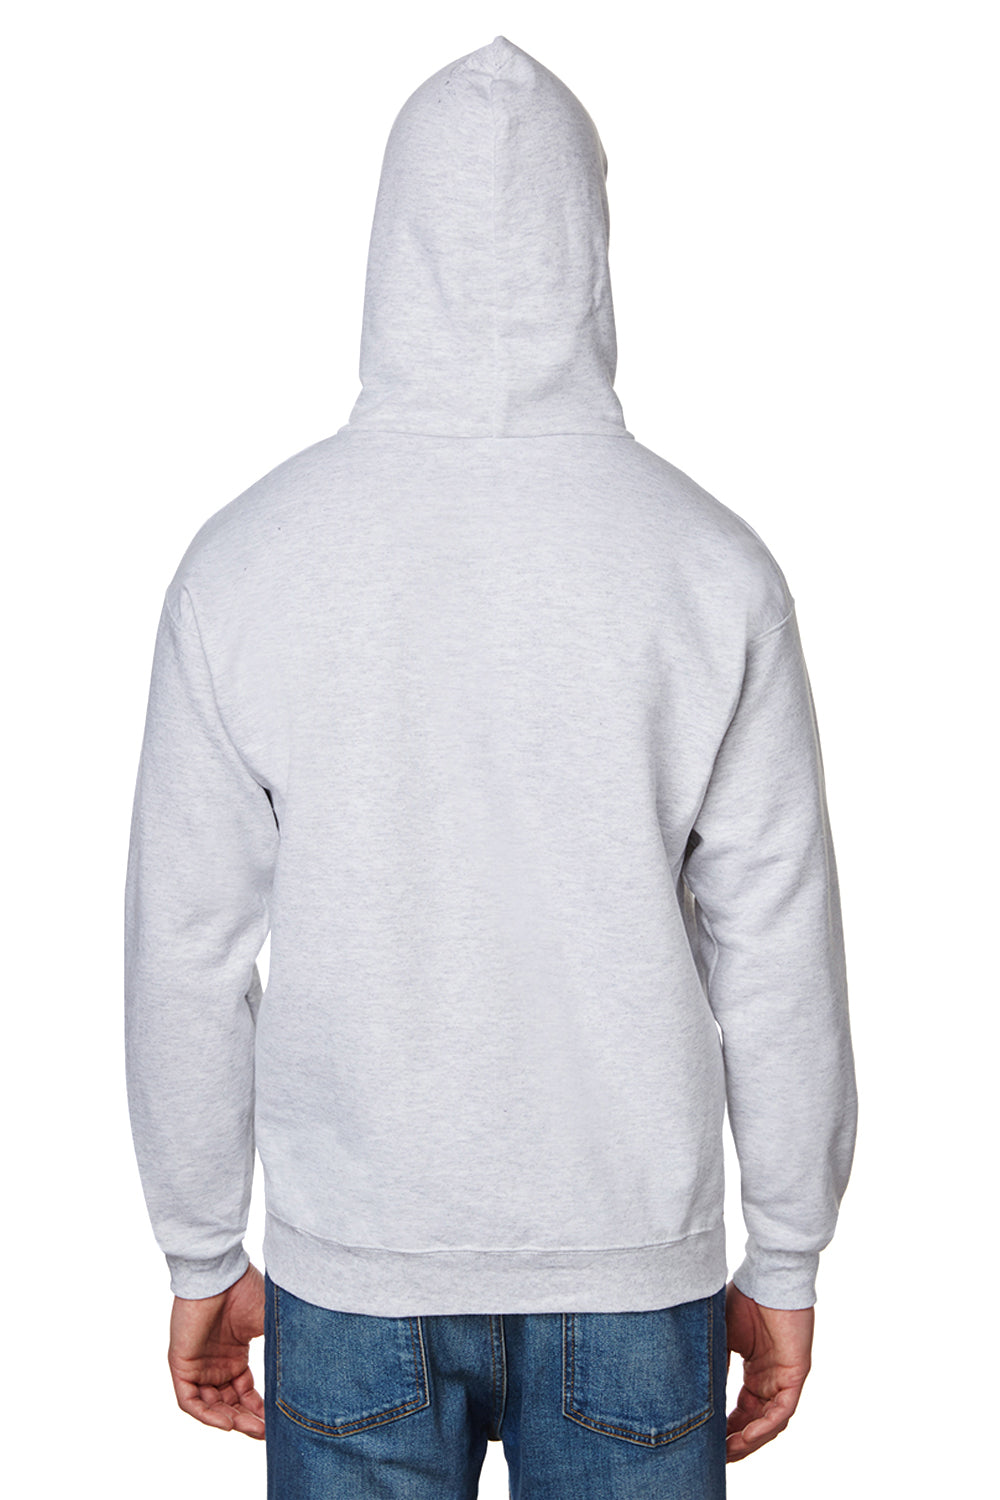 Hanes F170 Mens Ultimate Cotton PrintPro XP Hooded Sweatshirt Hoodie Ash Grey Back